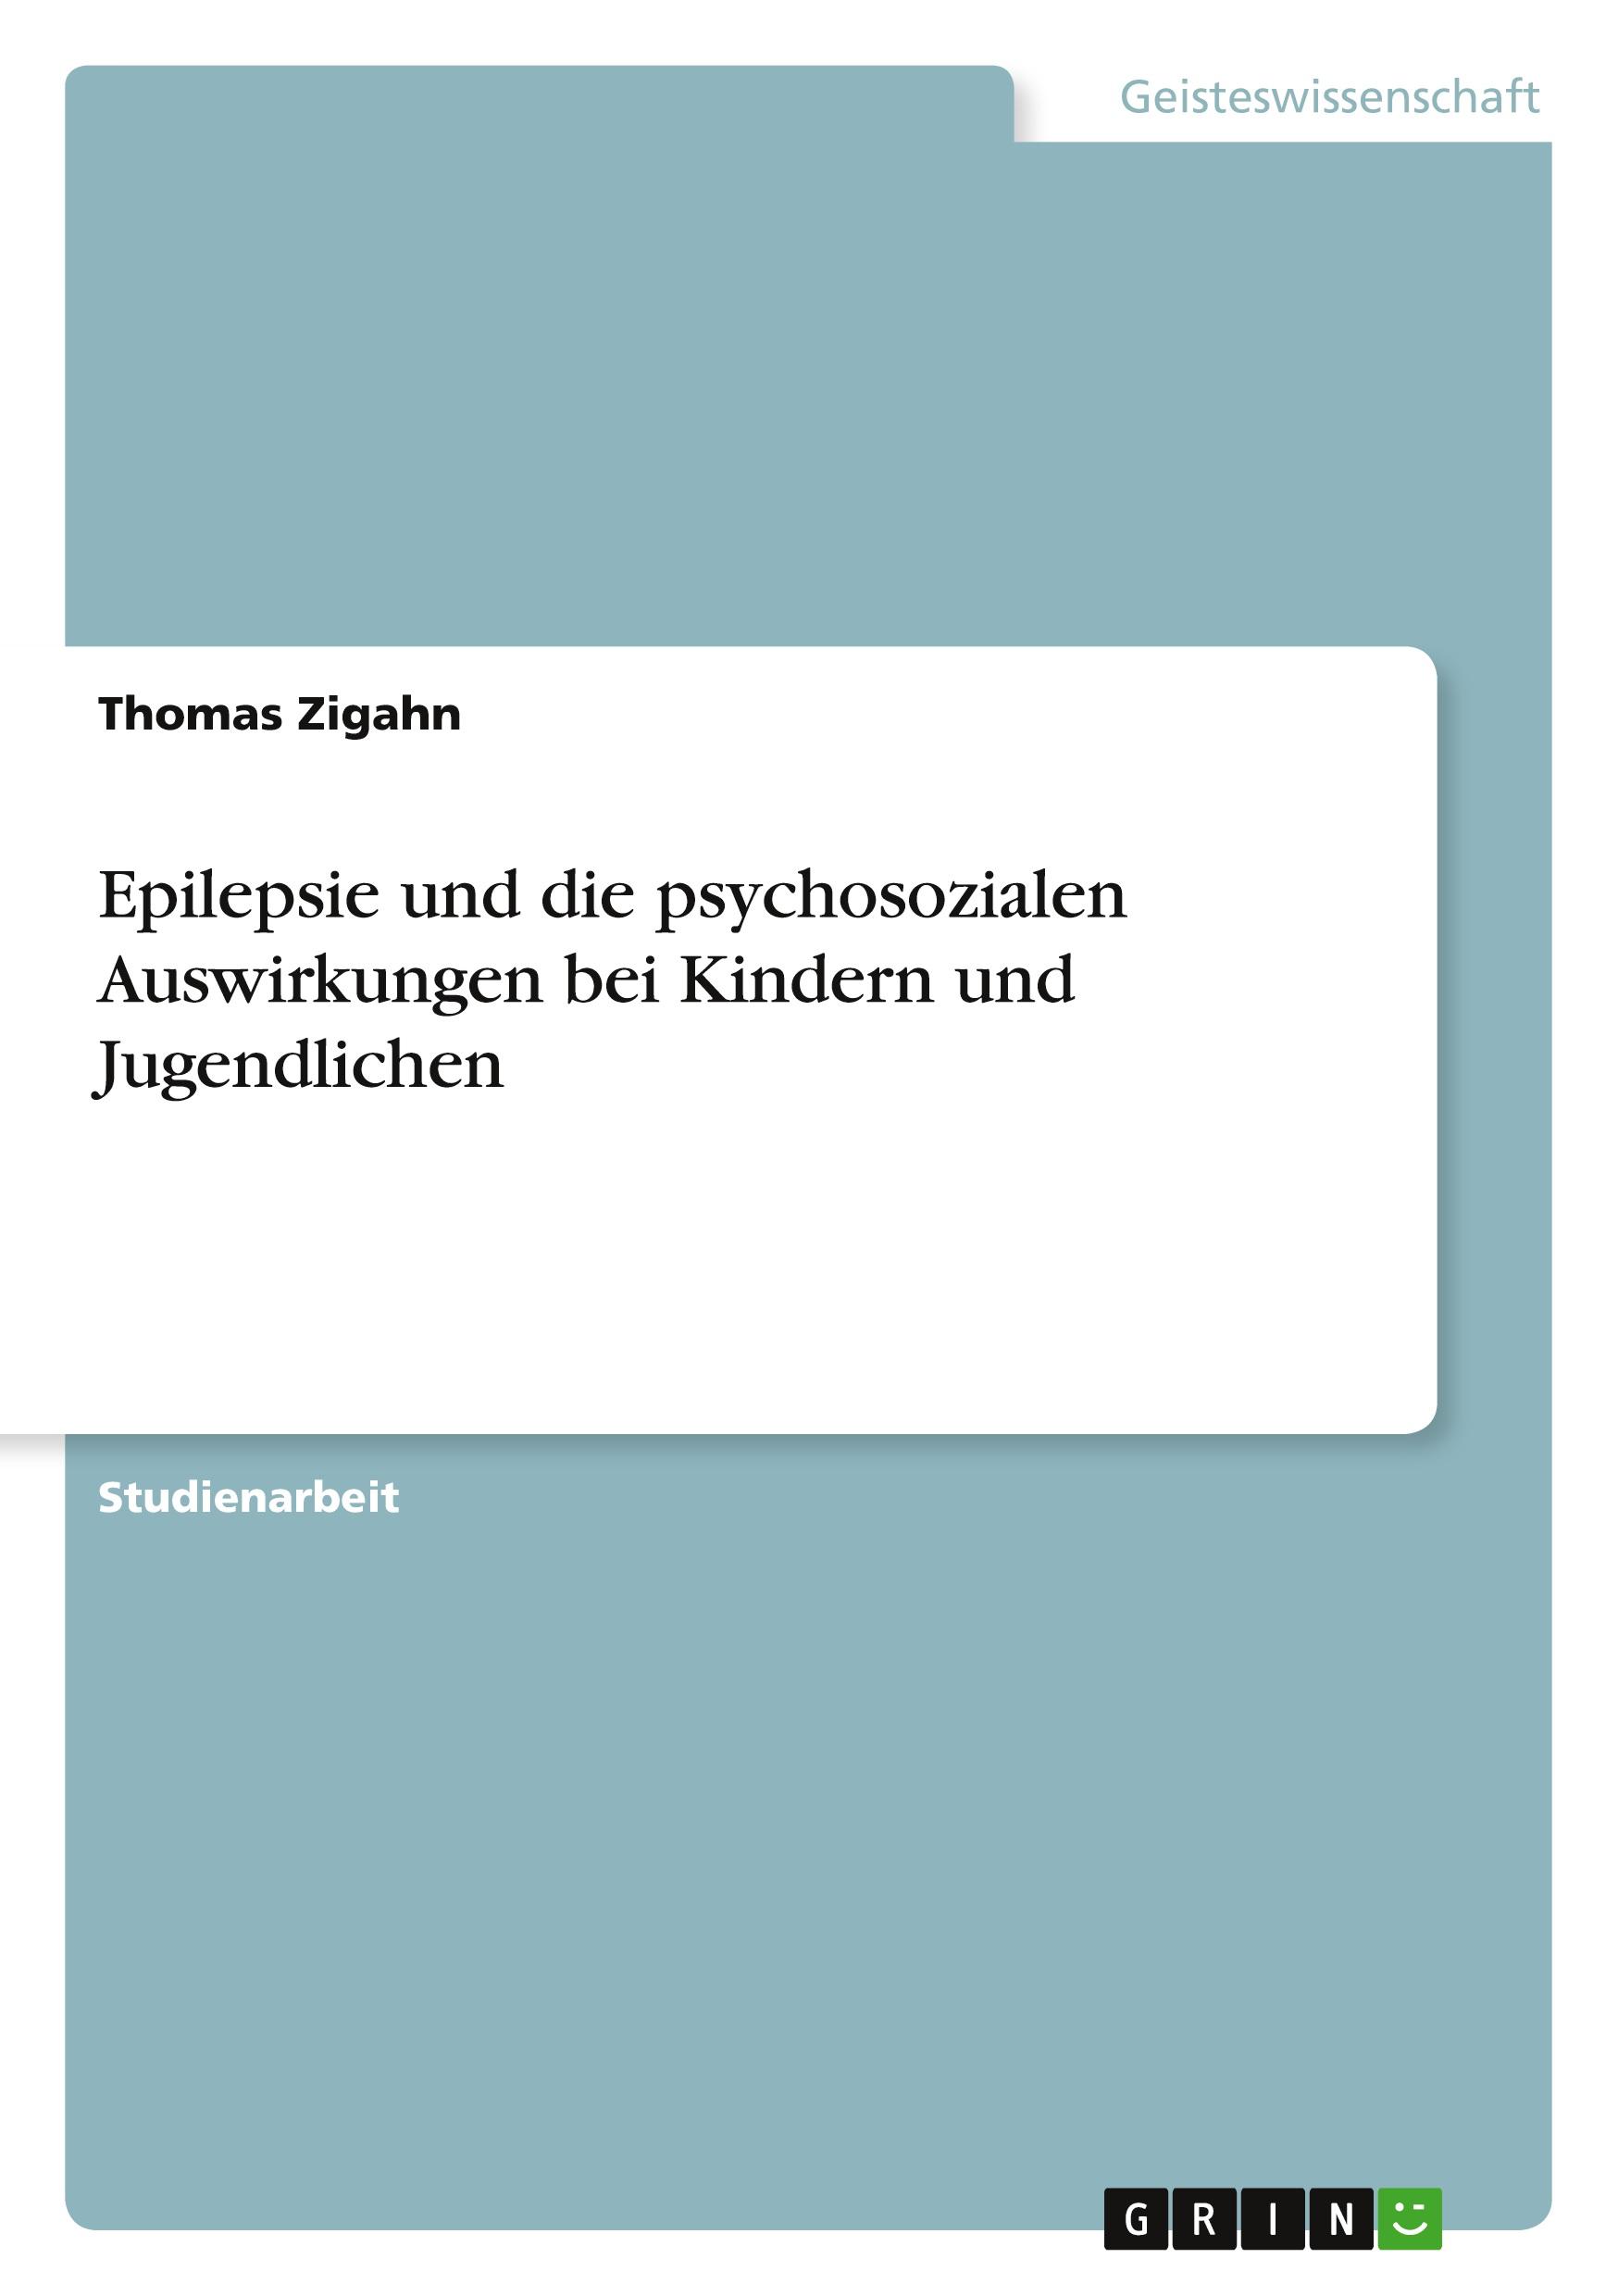 Epilepsie und die psychosozialen Auswirkungen bei Kindern und Jugendlichen / Thomas Zigahn / Taschenbuch / Paperback / Deutsch / 2010 / GRIN Verlag / EAN 9783640755691 - Zigahn, Thomas